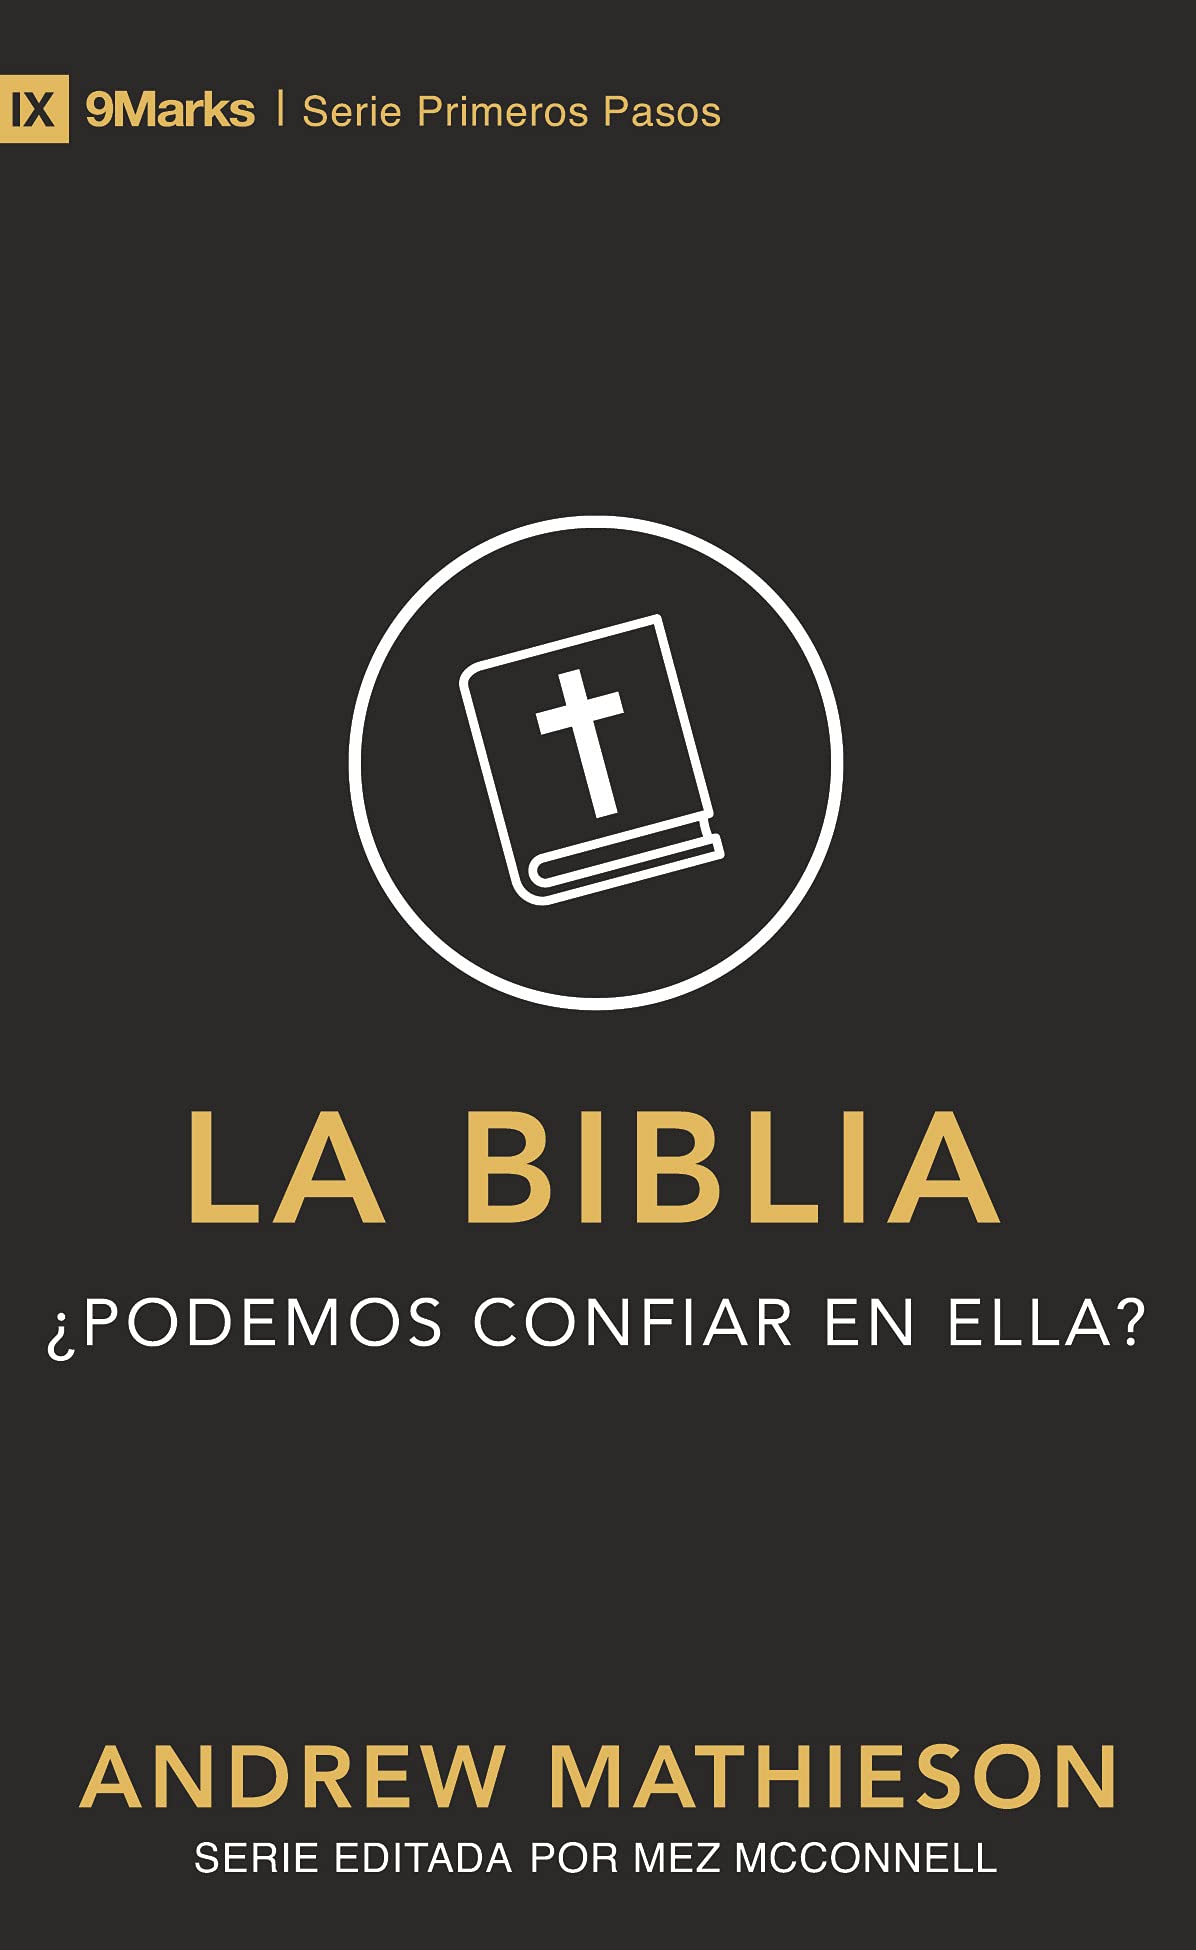 La Biblia: ¿Podemos confiar en ella? - Librería Libros Cristianos - Libro